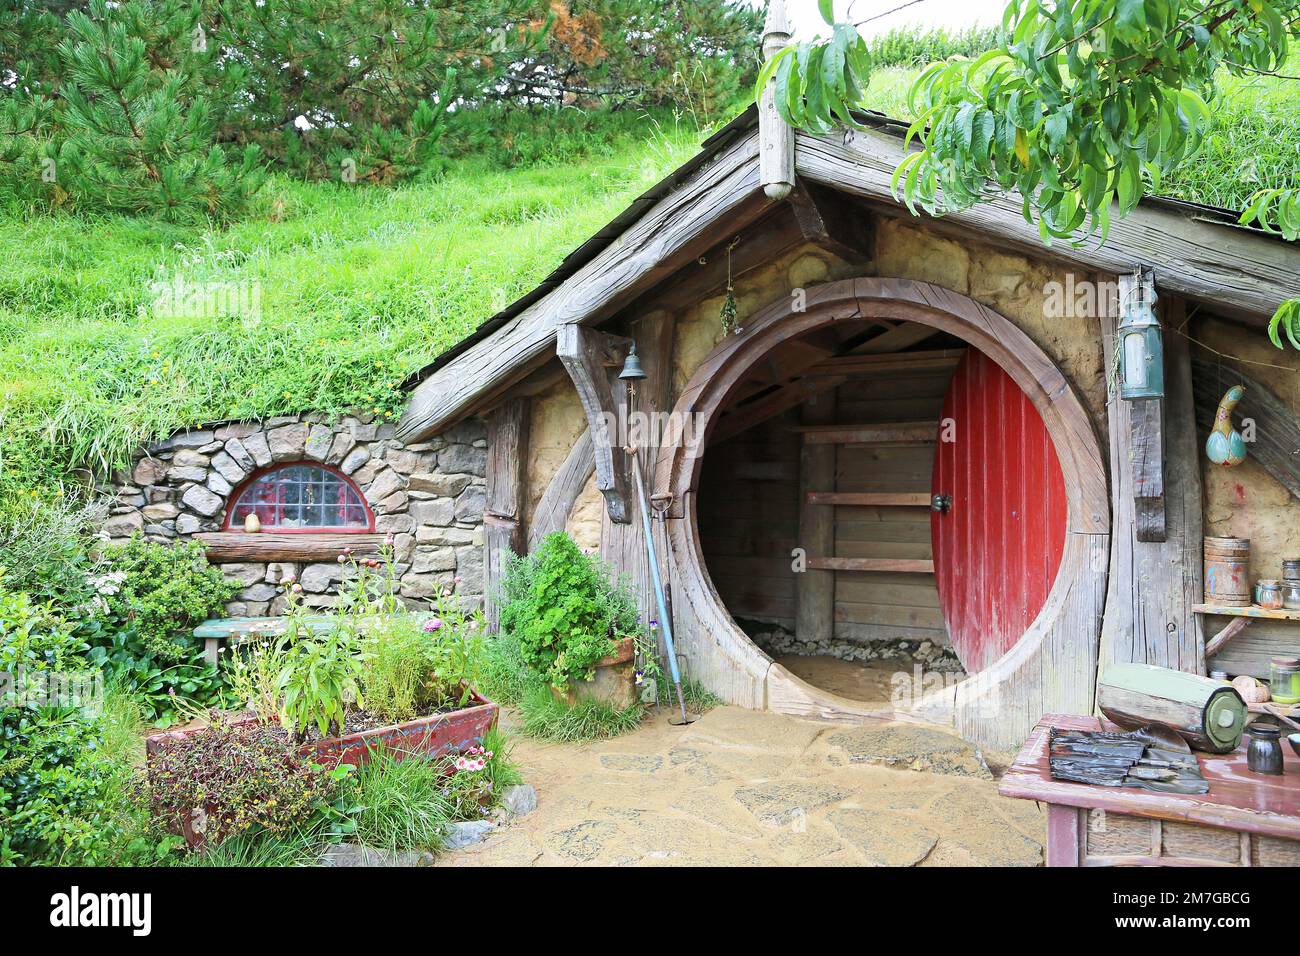 Hobbit house with open door - Matamata, New Zealand Stock Photo